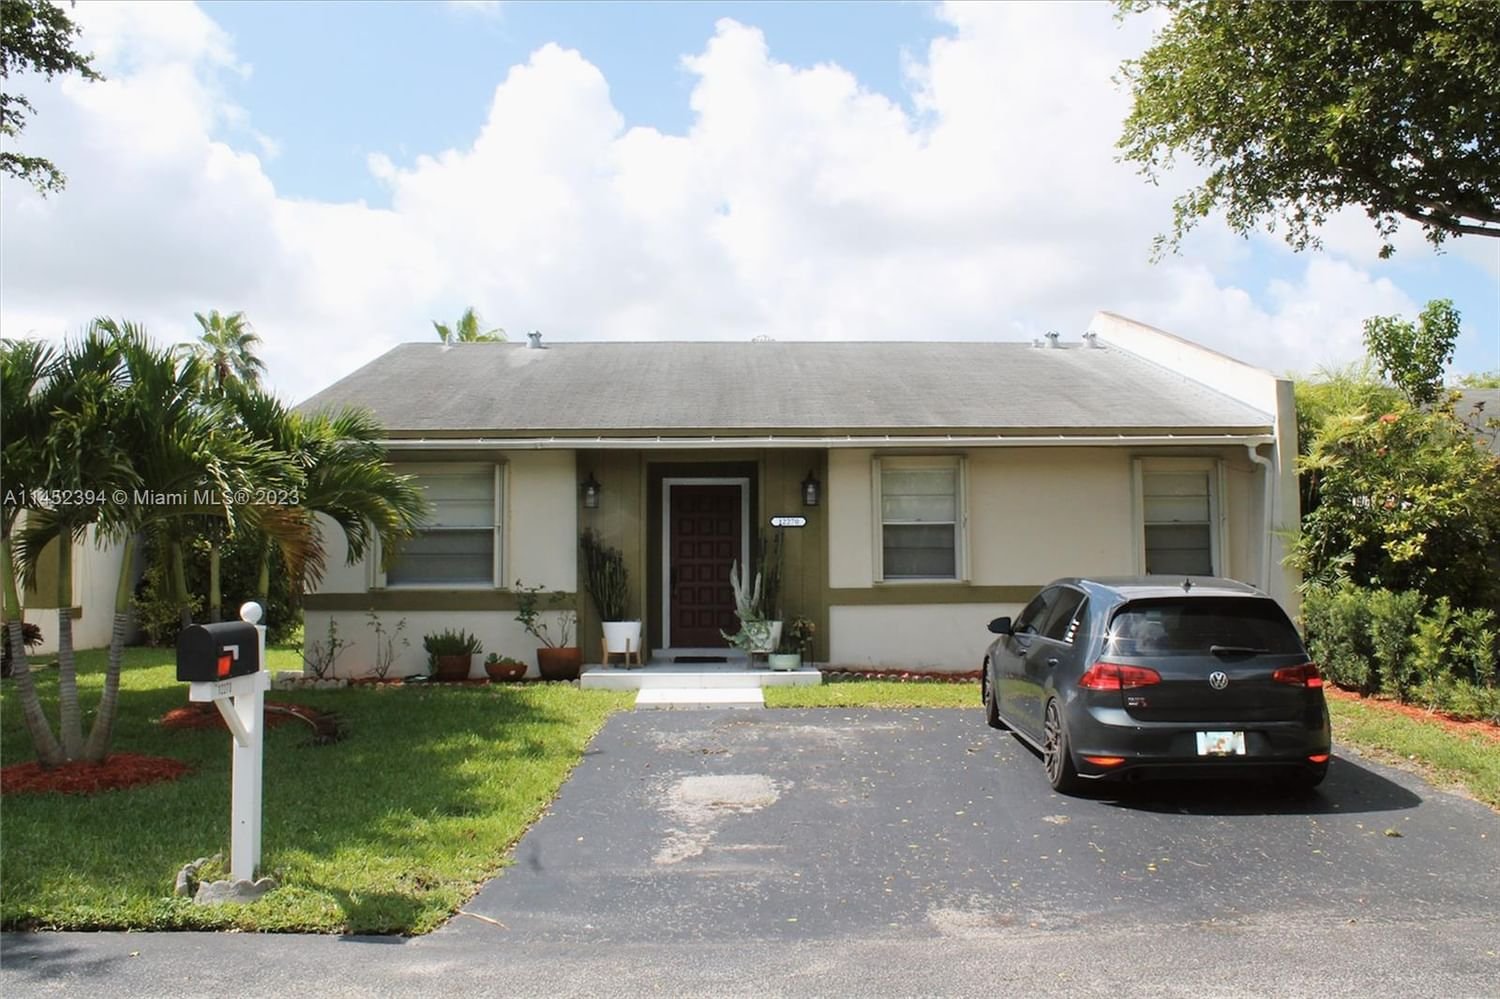 Real estate property located at 12270 116th Ln, Miami-Dade County, Miami, FL